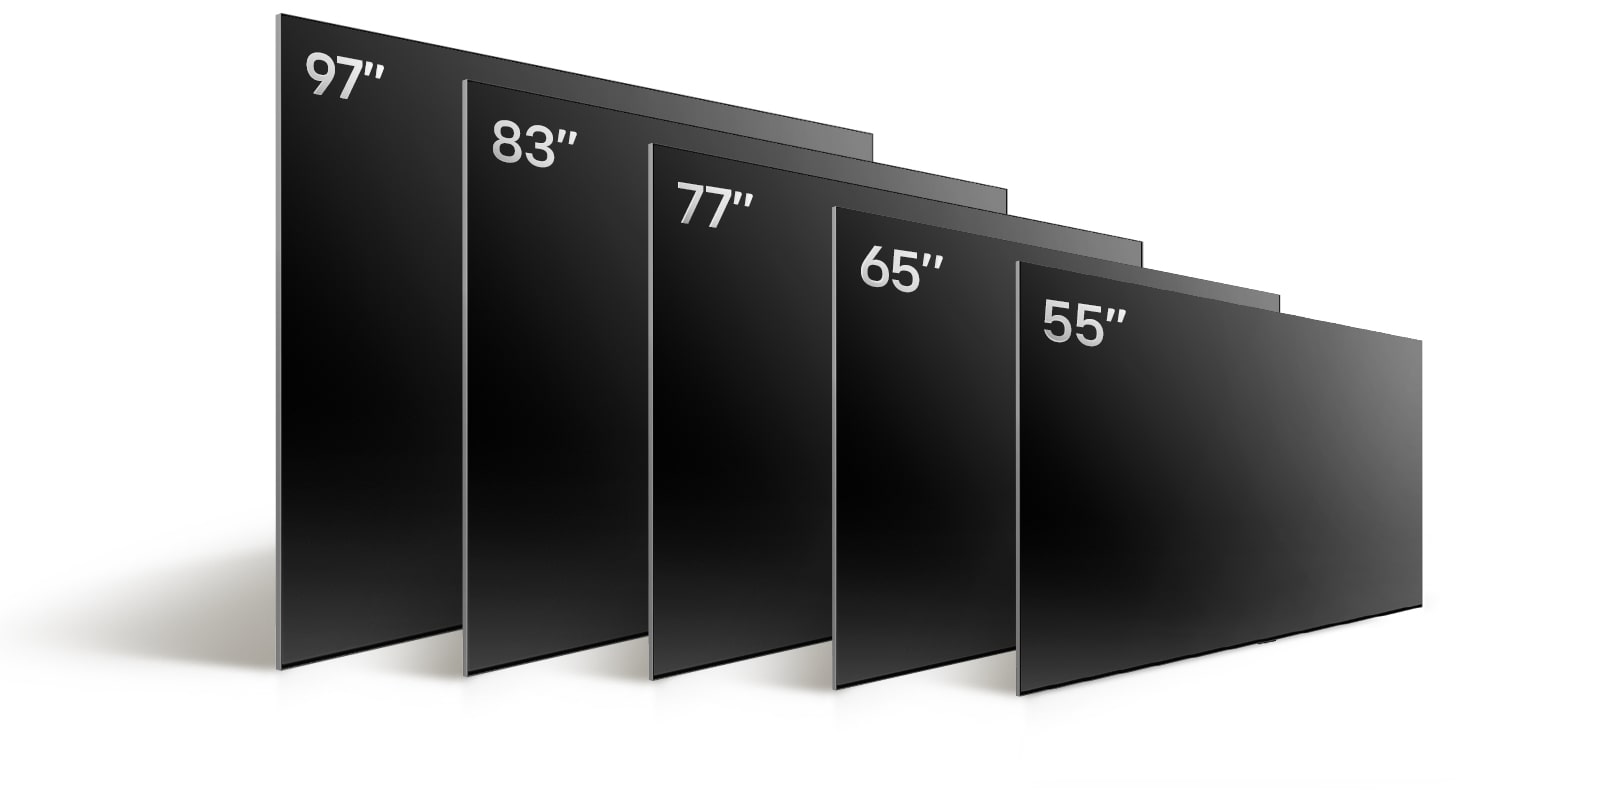 So sánh các kích cỡ khác nhau của LG OLED TV, OLED G4, trình bày OLED G4 55 inch, OLED G4 65 inch, OLED G4 77 inch, OLED G4 83 inch và OLED G4 97 inch.